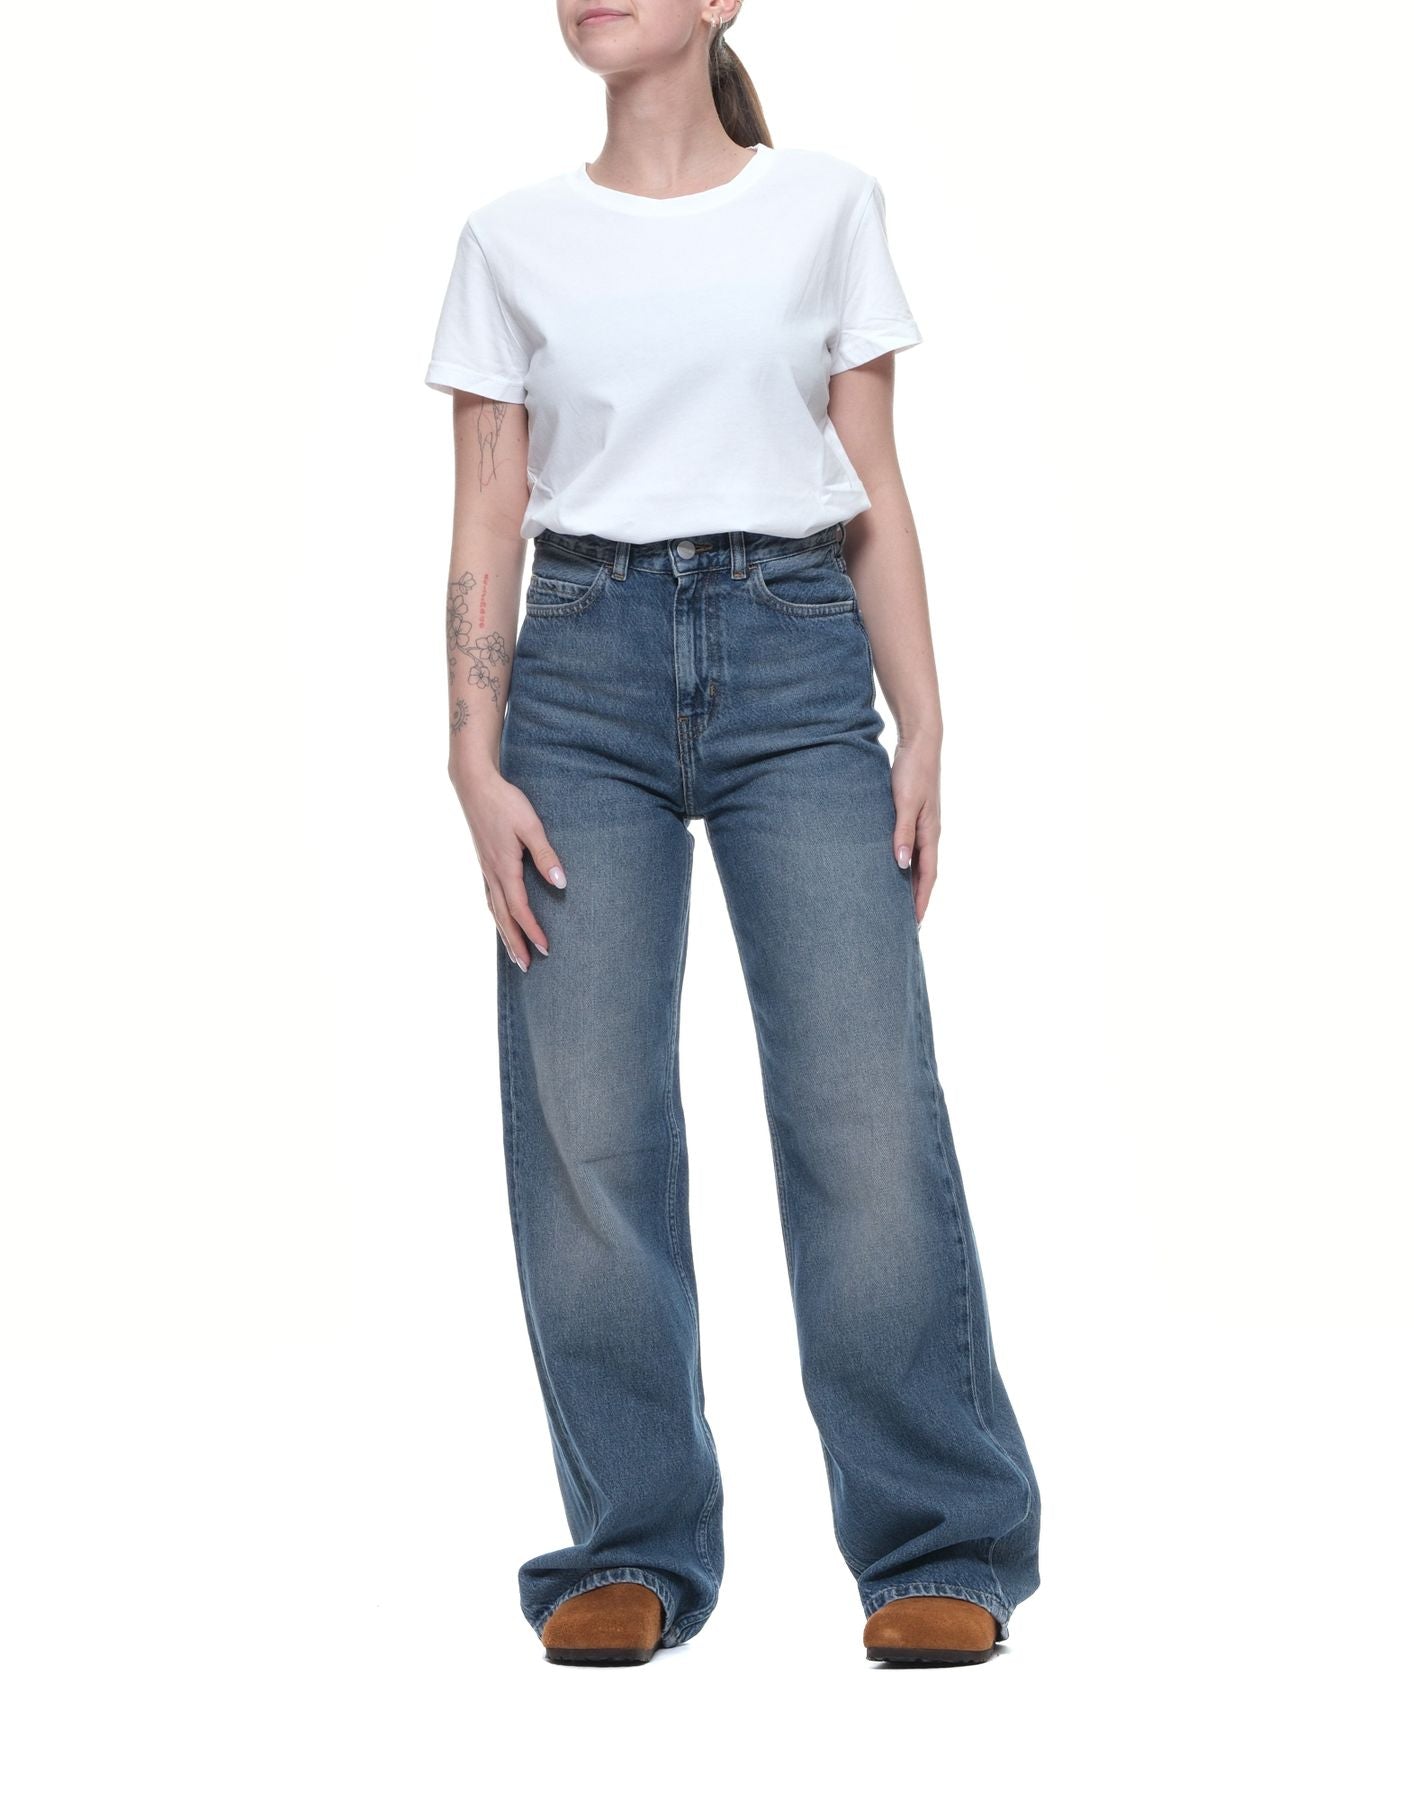 Jeans pour femme i030497 bleu foncé CARHARTT WIP